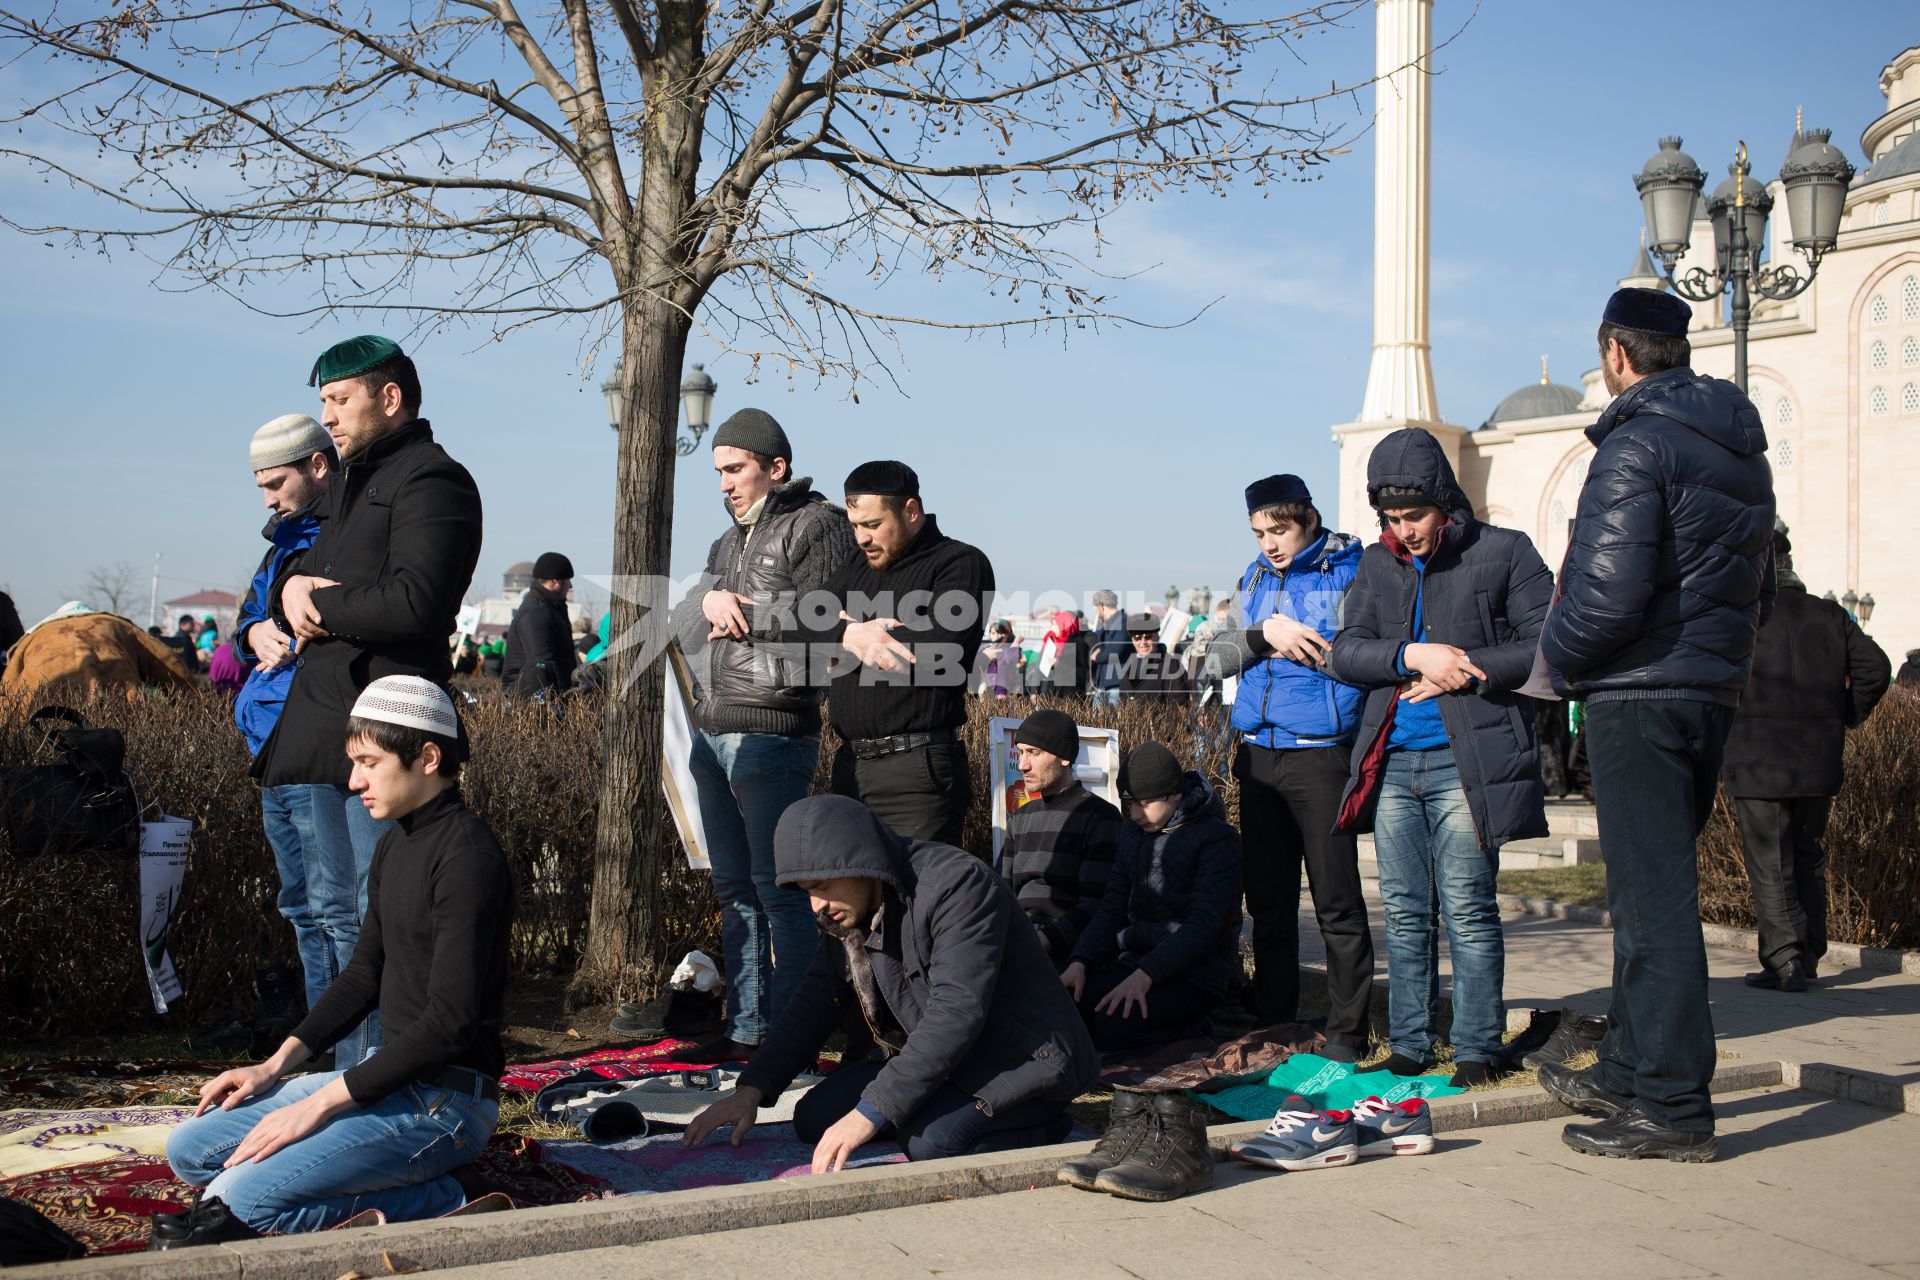 Митинг в Грозном против карикатур на пророка Мухаммеда, которые рисует франзуский журнал \"Шарли Эбдо\". Мероприятие завершилось массовым намазом.